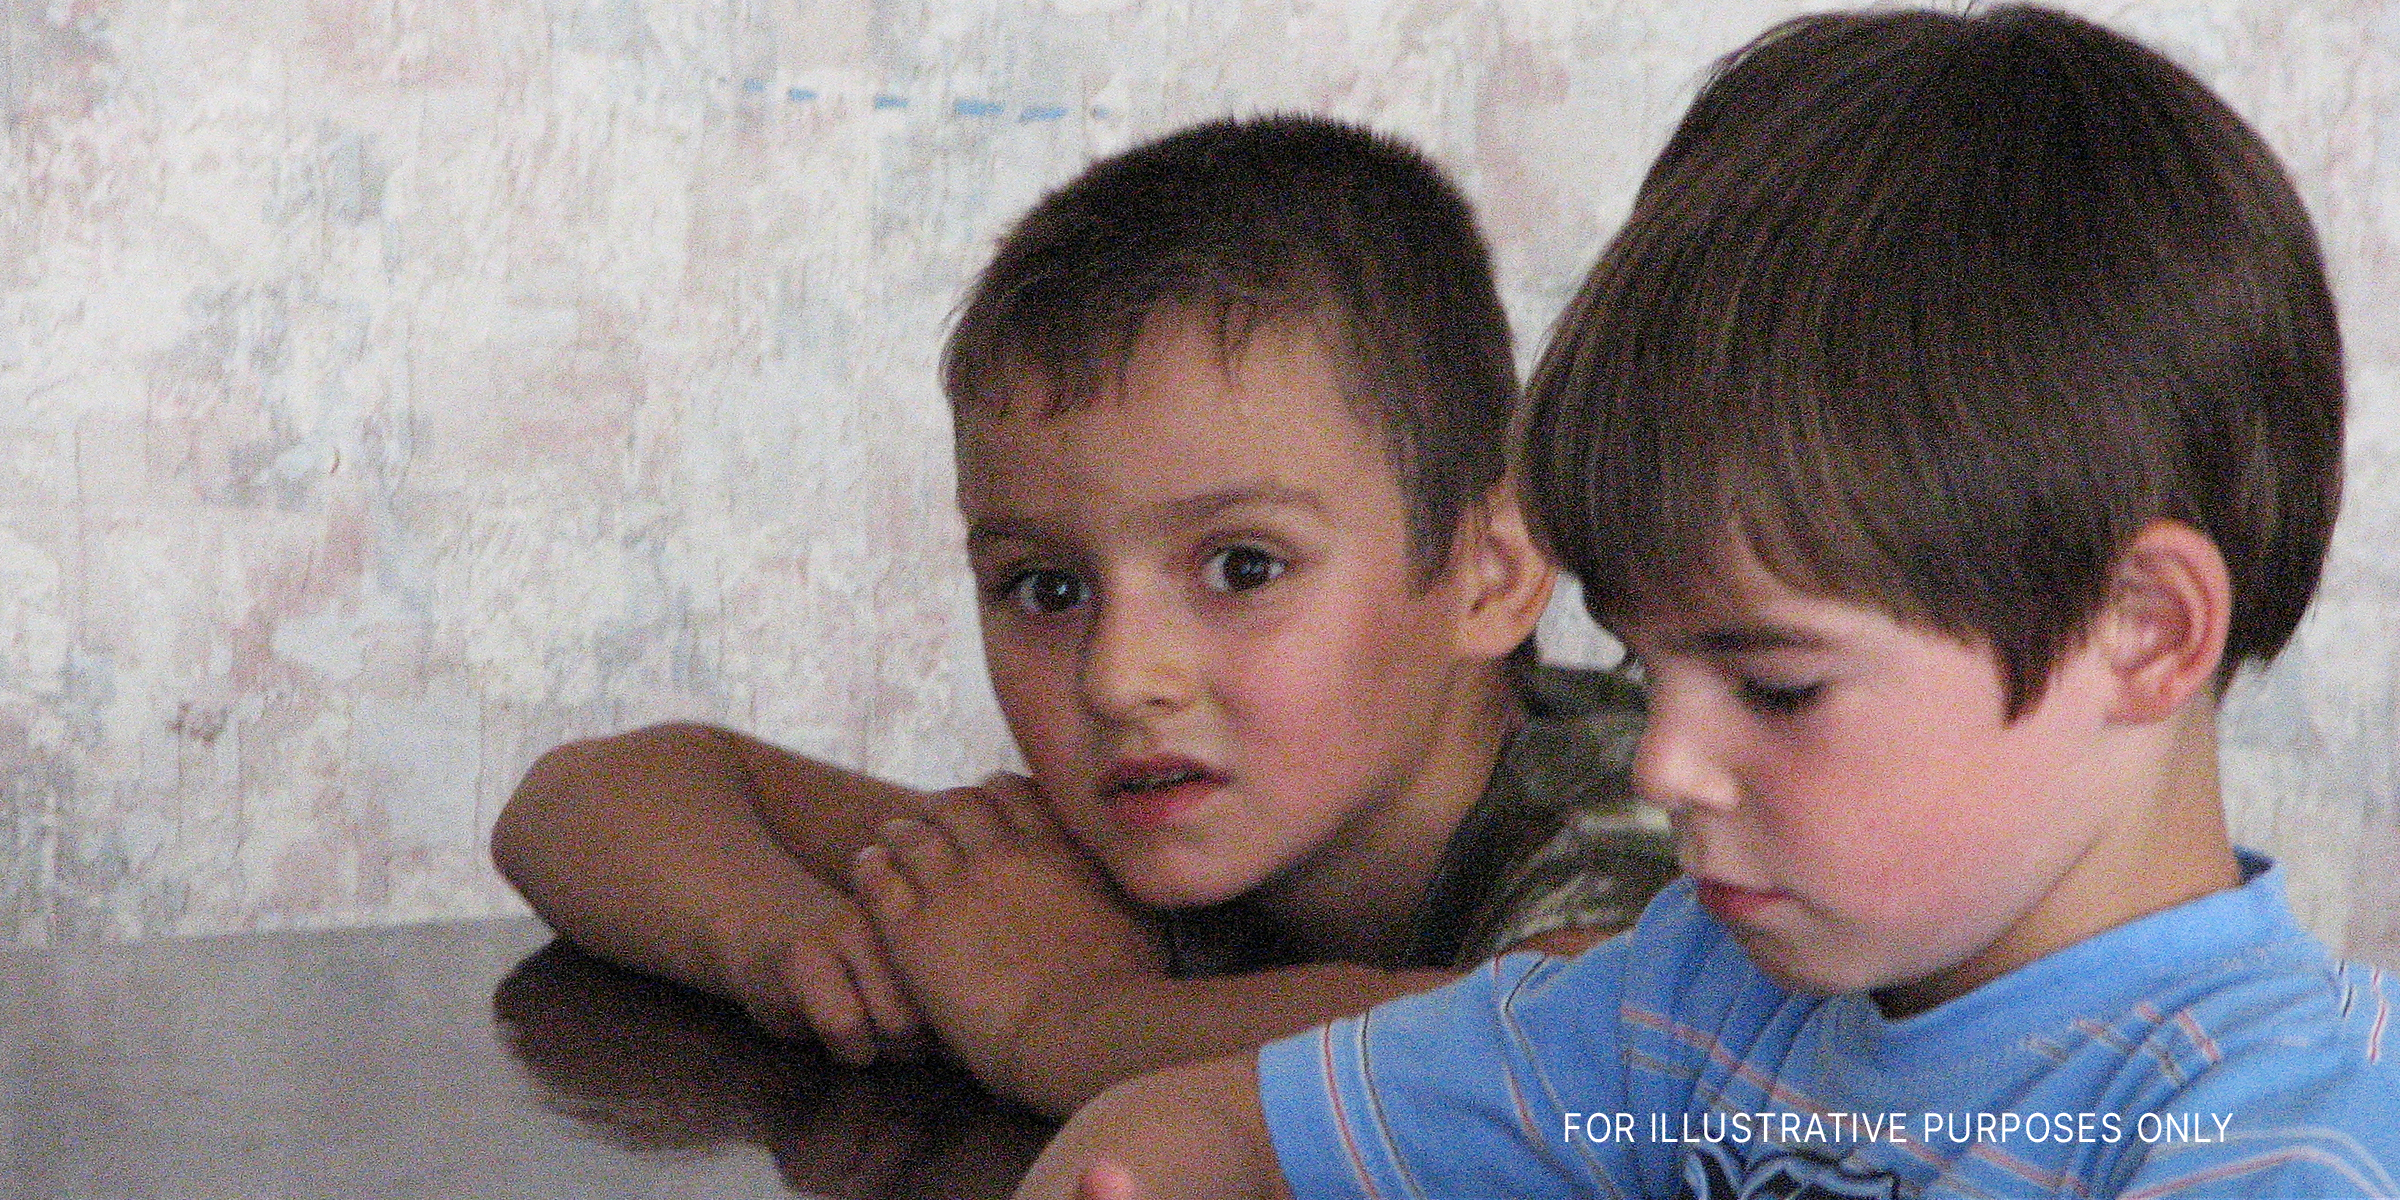 Zwei kleine Jungen, die aufgebracht sind | Quelle: flickr/ (CC BY 2.0) by saritarobinson